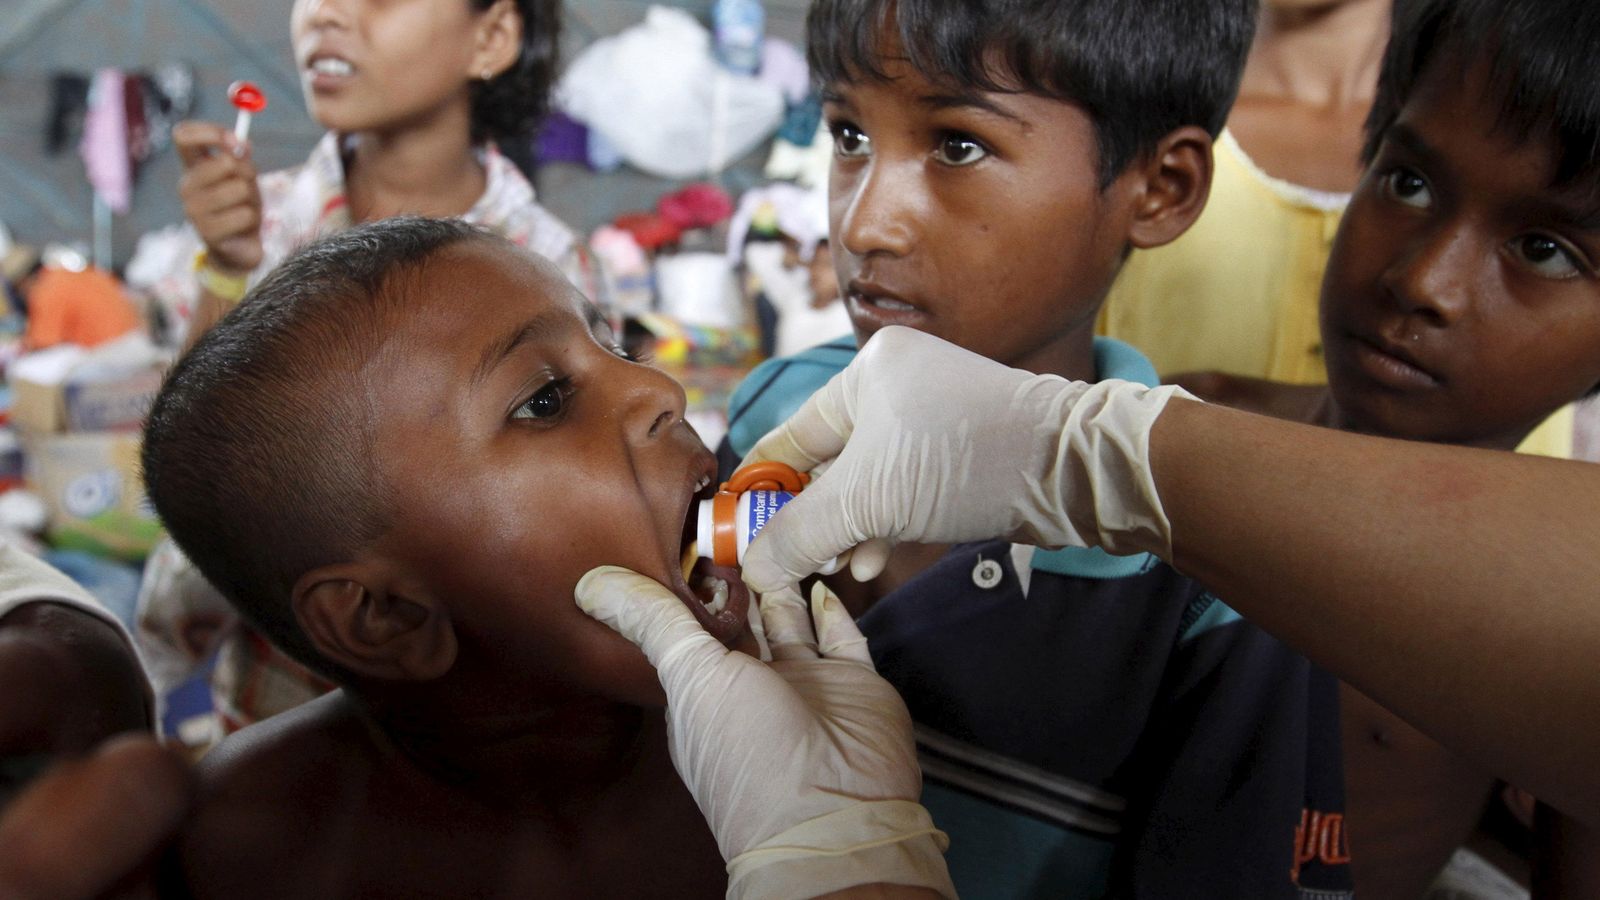 Foto: Un niño rohingya recibe medicación después de ser recogido de un barco (Reuters)